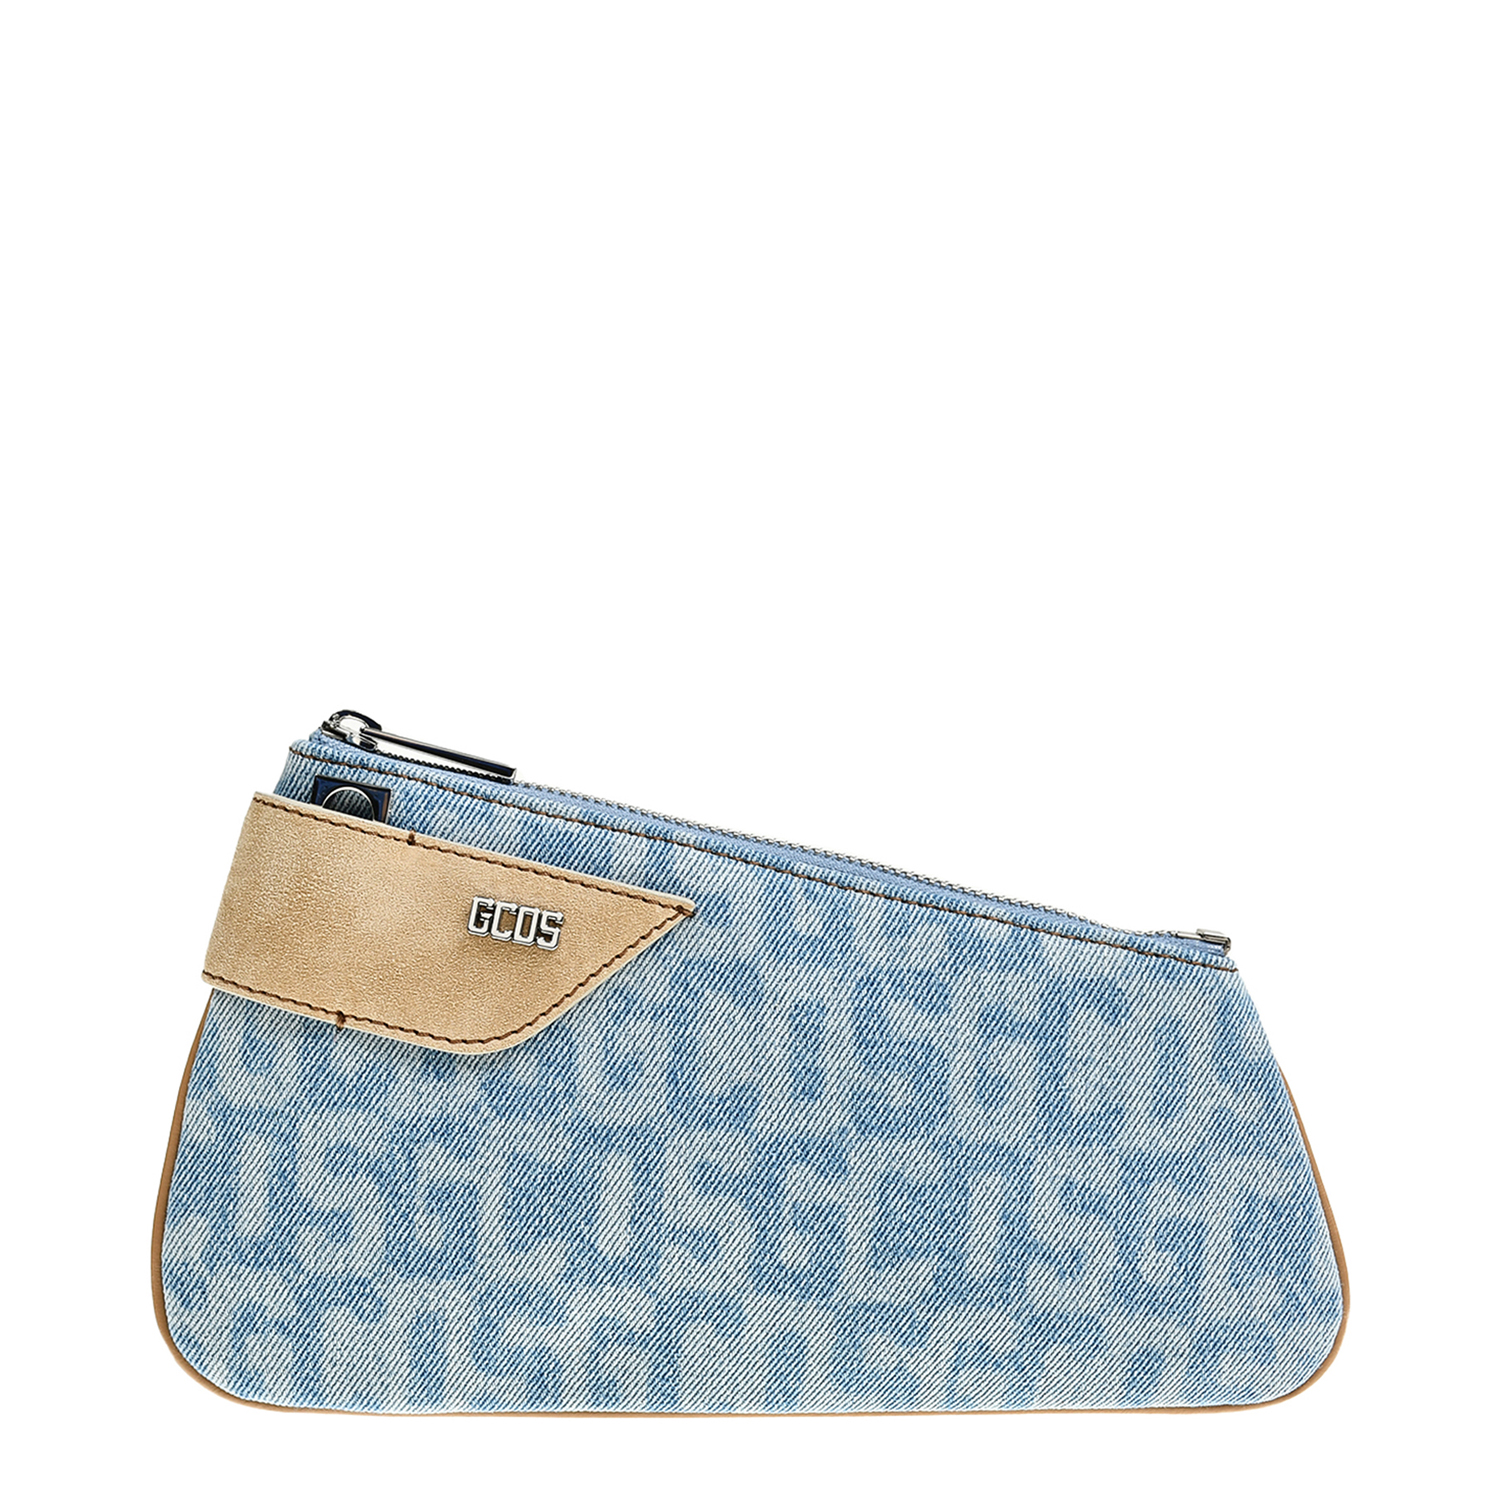 Джинсовая сумка со сплошным лого, голубая GCDS, размер unica, цвет голубой